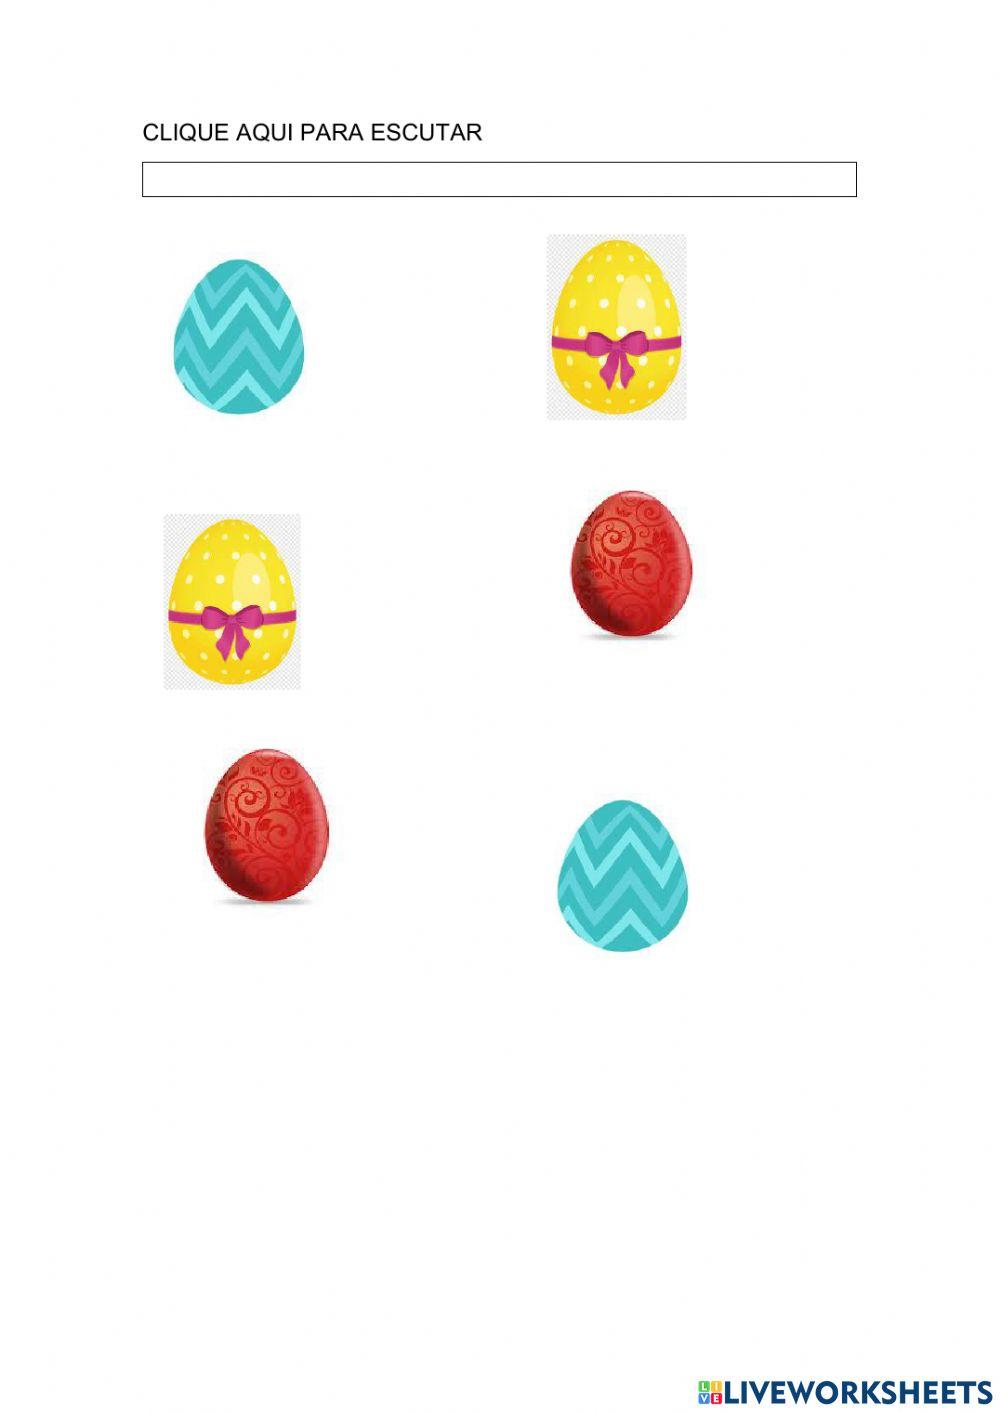 Observe os ovos de Pàscoa e suas cores e ligue corretamente